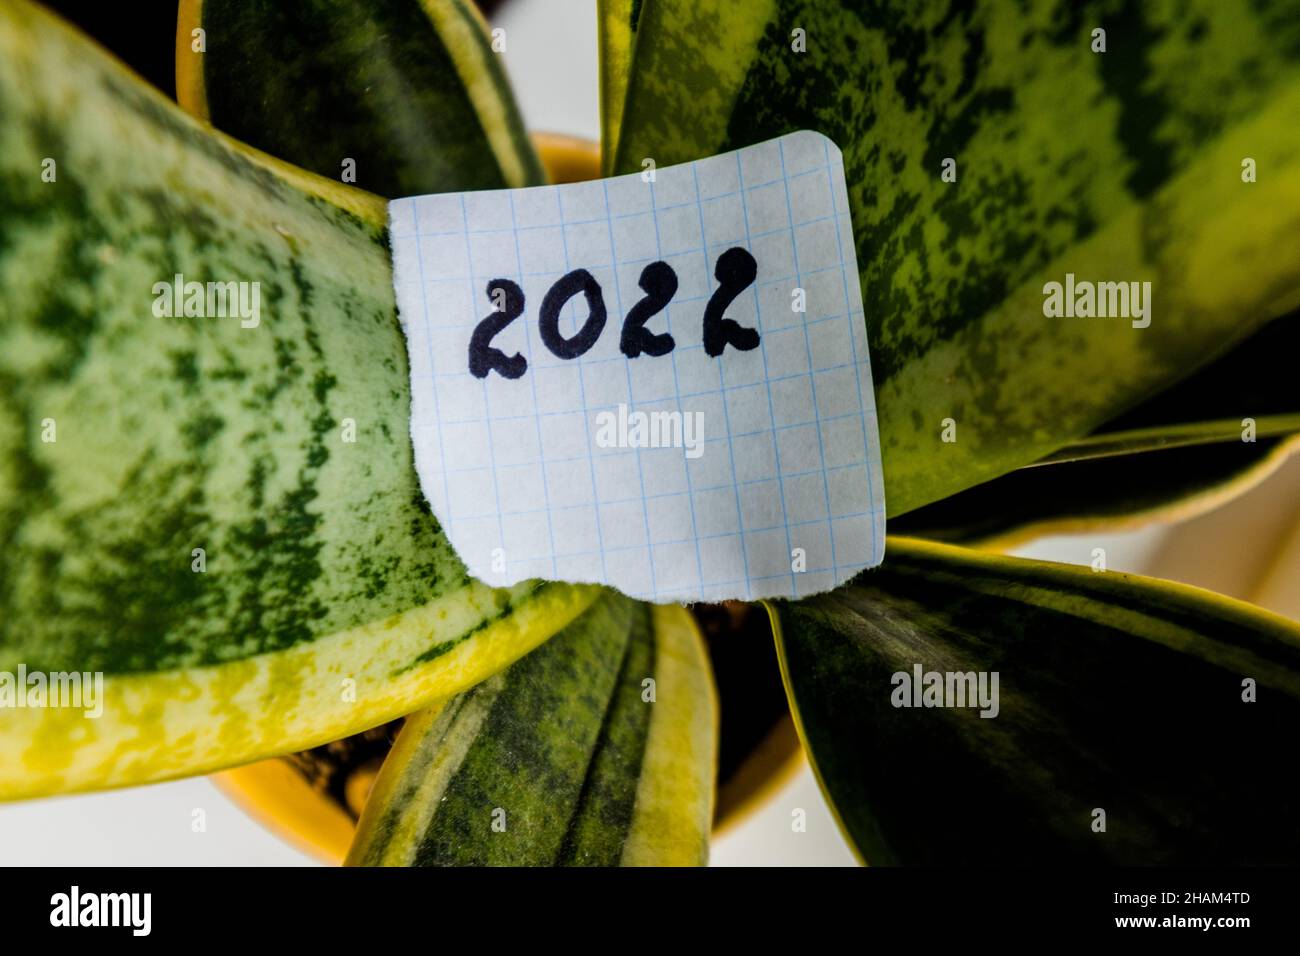 Nouvelle année 2022.Le numéro 2022 est écrit sur un morceau de papier et repose sur les feuilles vertes d'une plante de maison. Banque D'Images